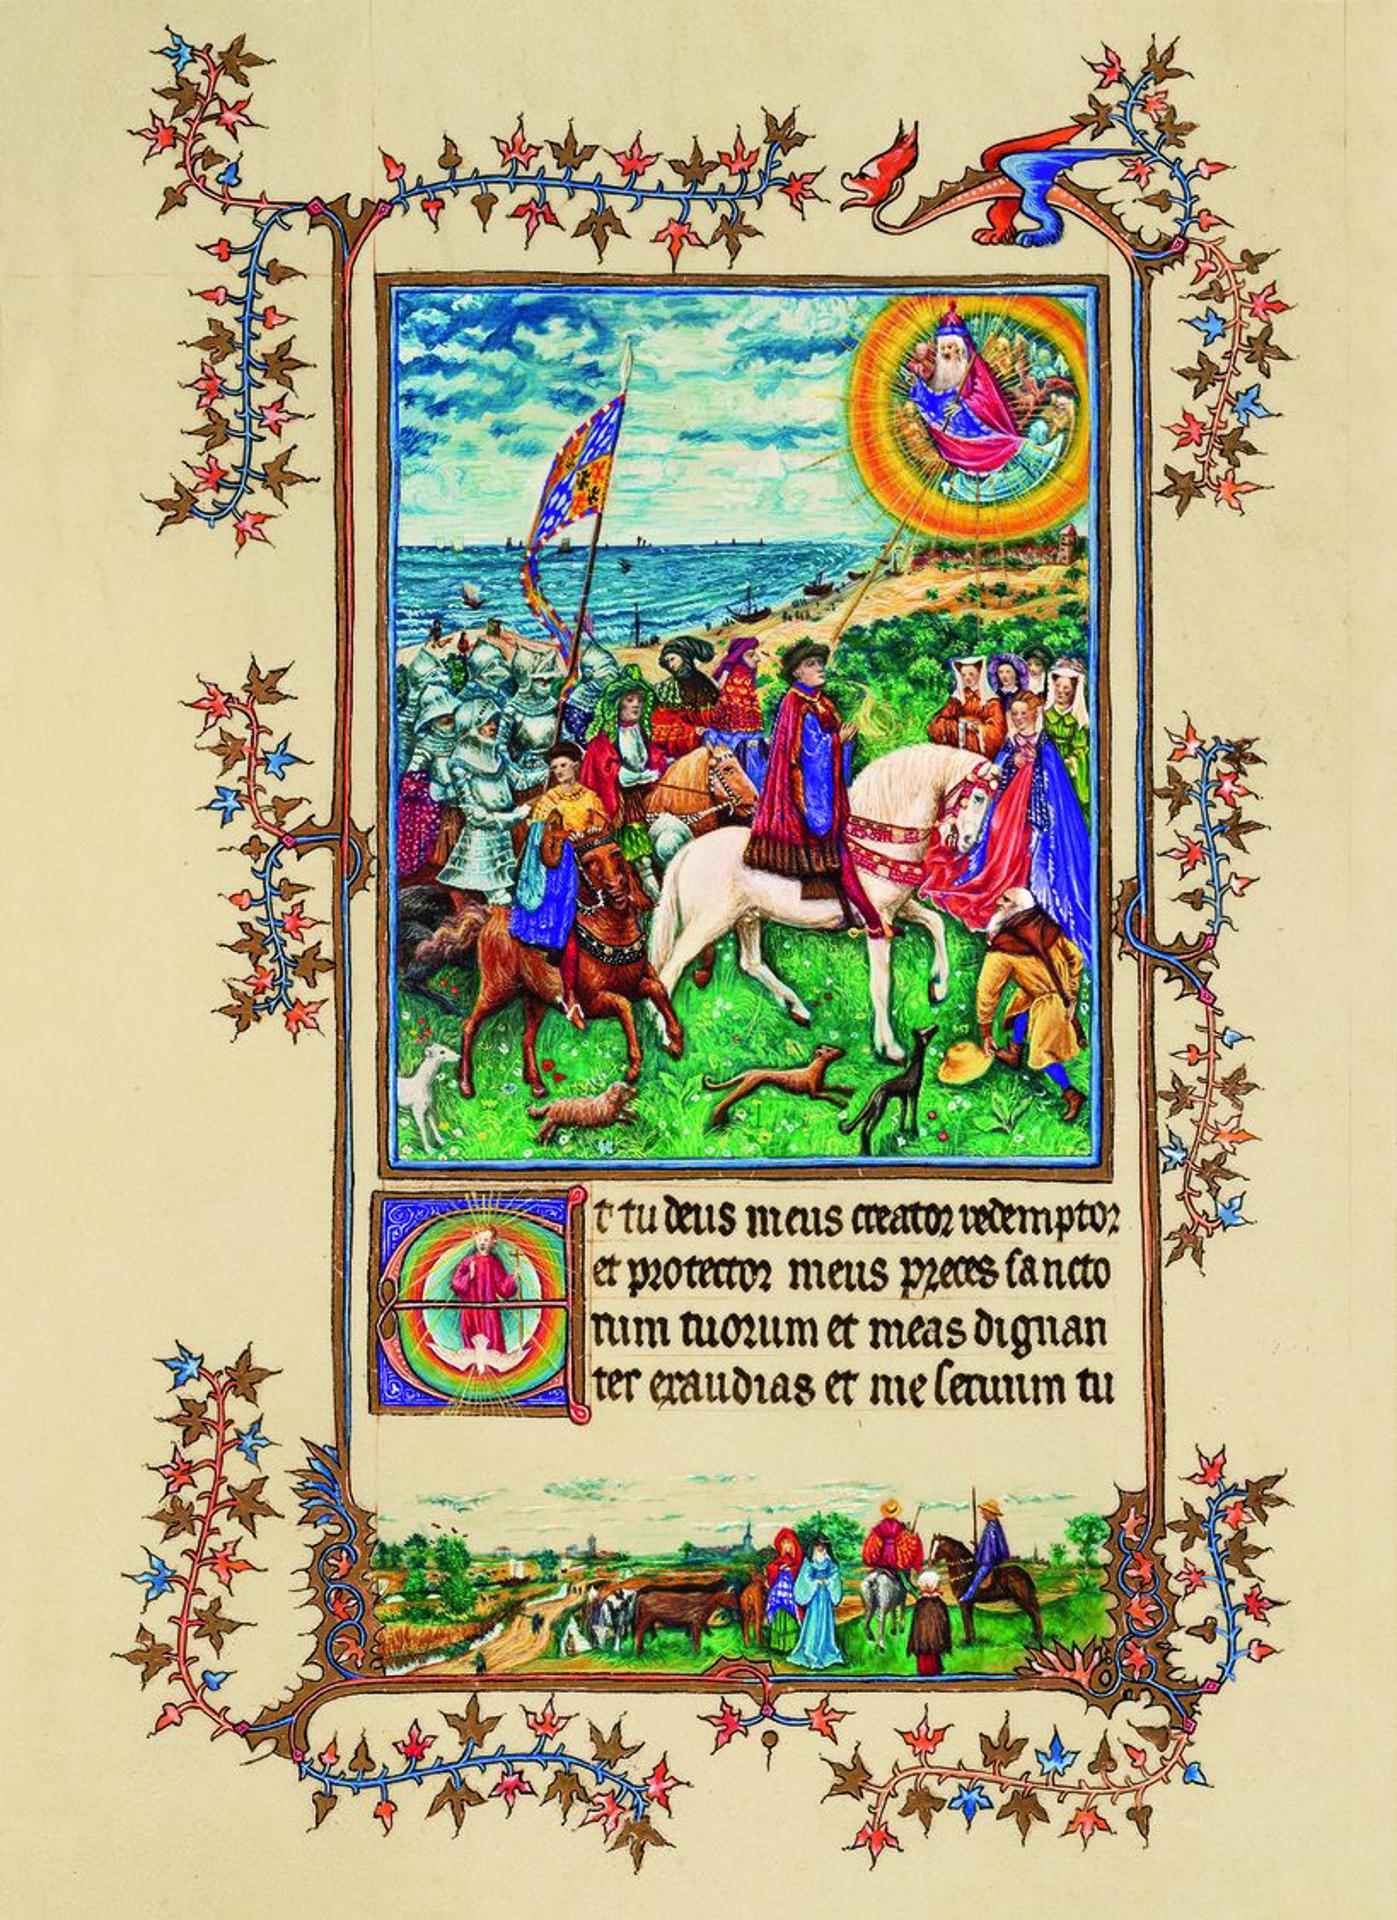 Libro de Oraciones de Torino del duque de BerryAutor: Patrimonio Ediciones.